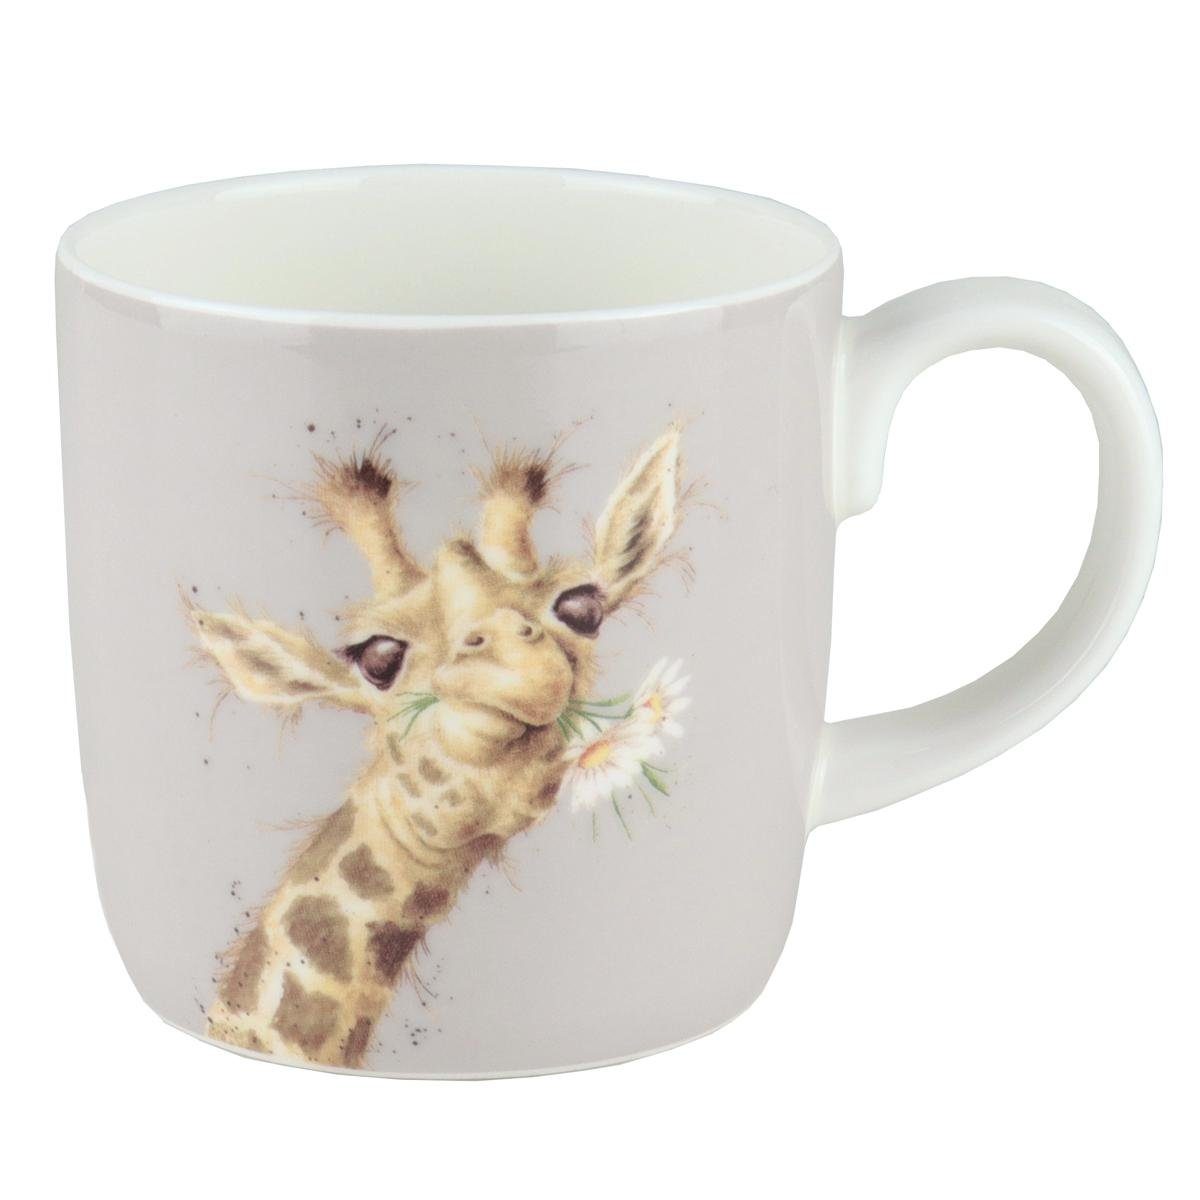 Wrendale Becher Wrendale Designs Porzellan-Becher Giraffe Daisy, Porzellan